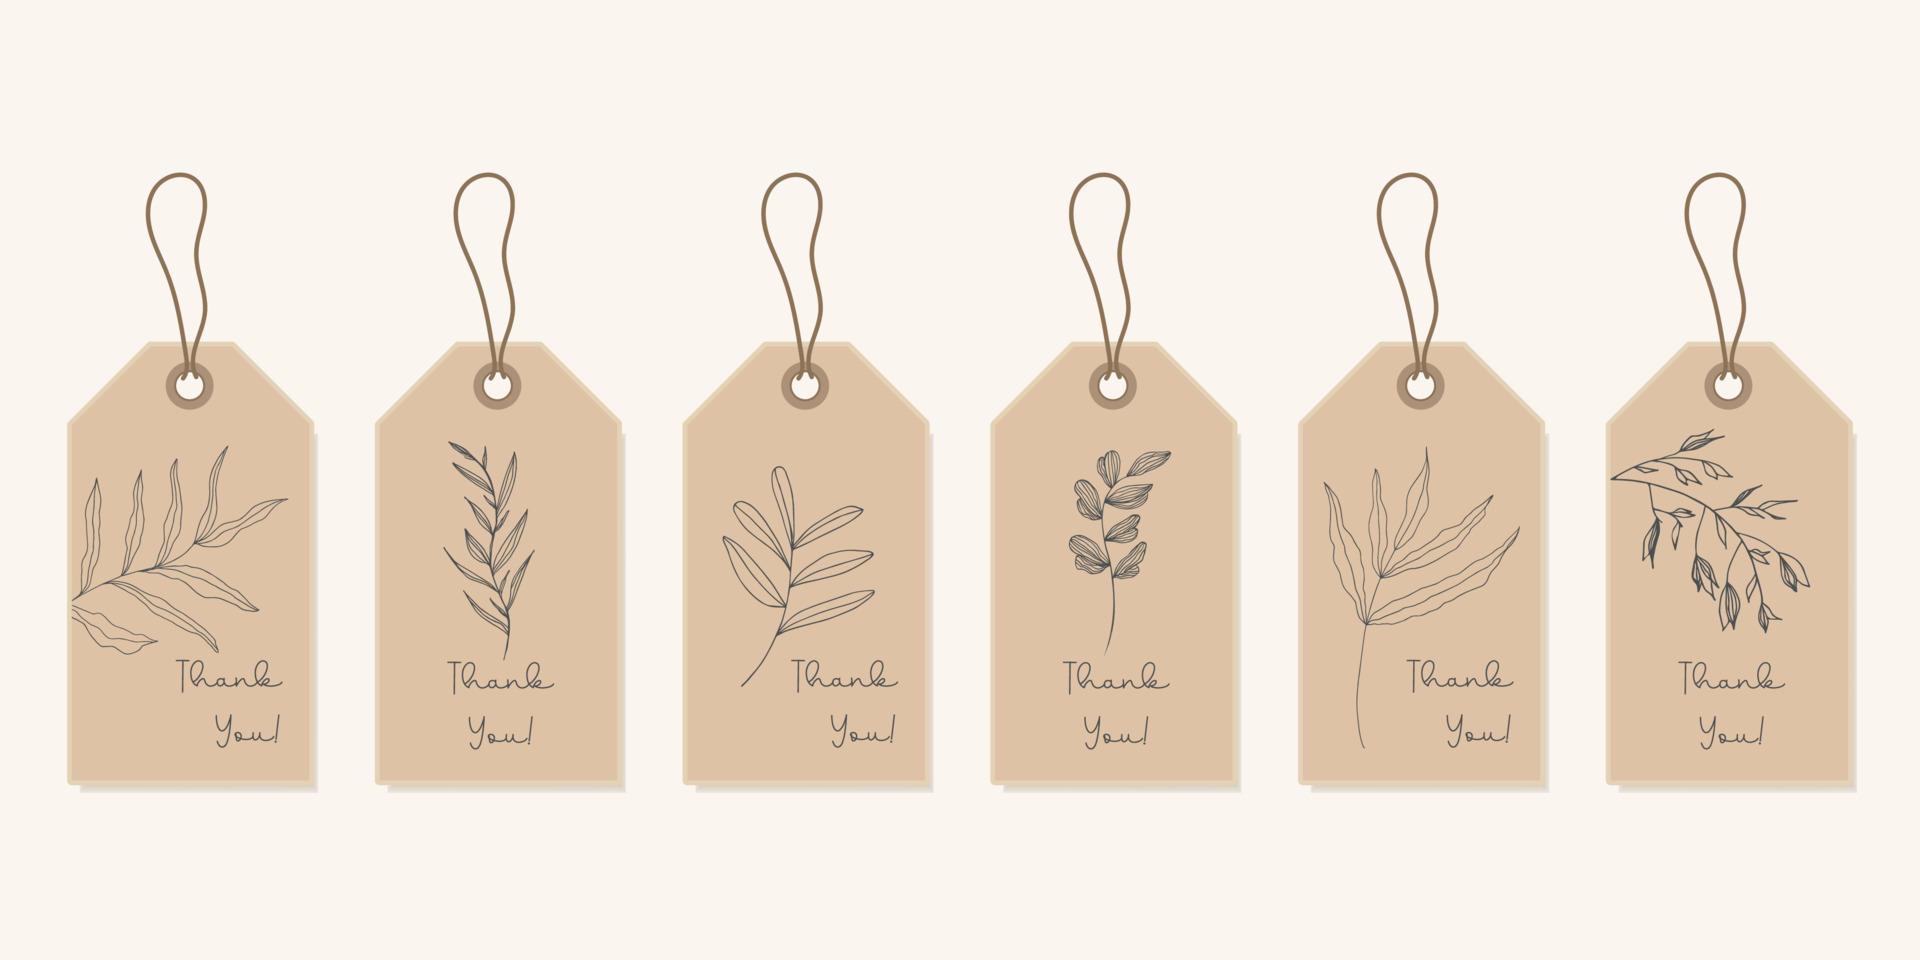 conjunto de ilustraciones de plantas. etiquetas minimalistas para etiquetas de hojas aisladas. un signo natural dibujado a mano para una etiqueta de producto en un diseño rústico simple. vector